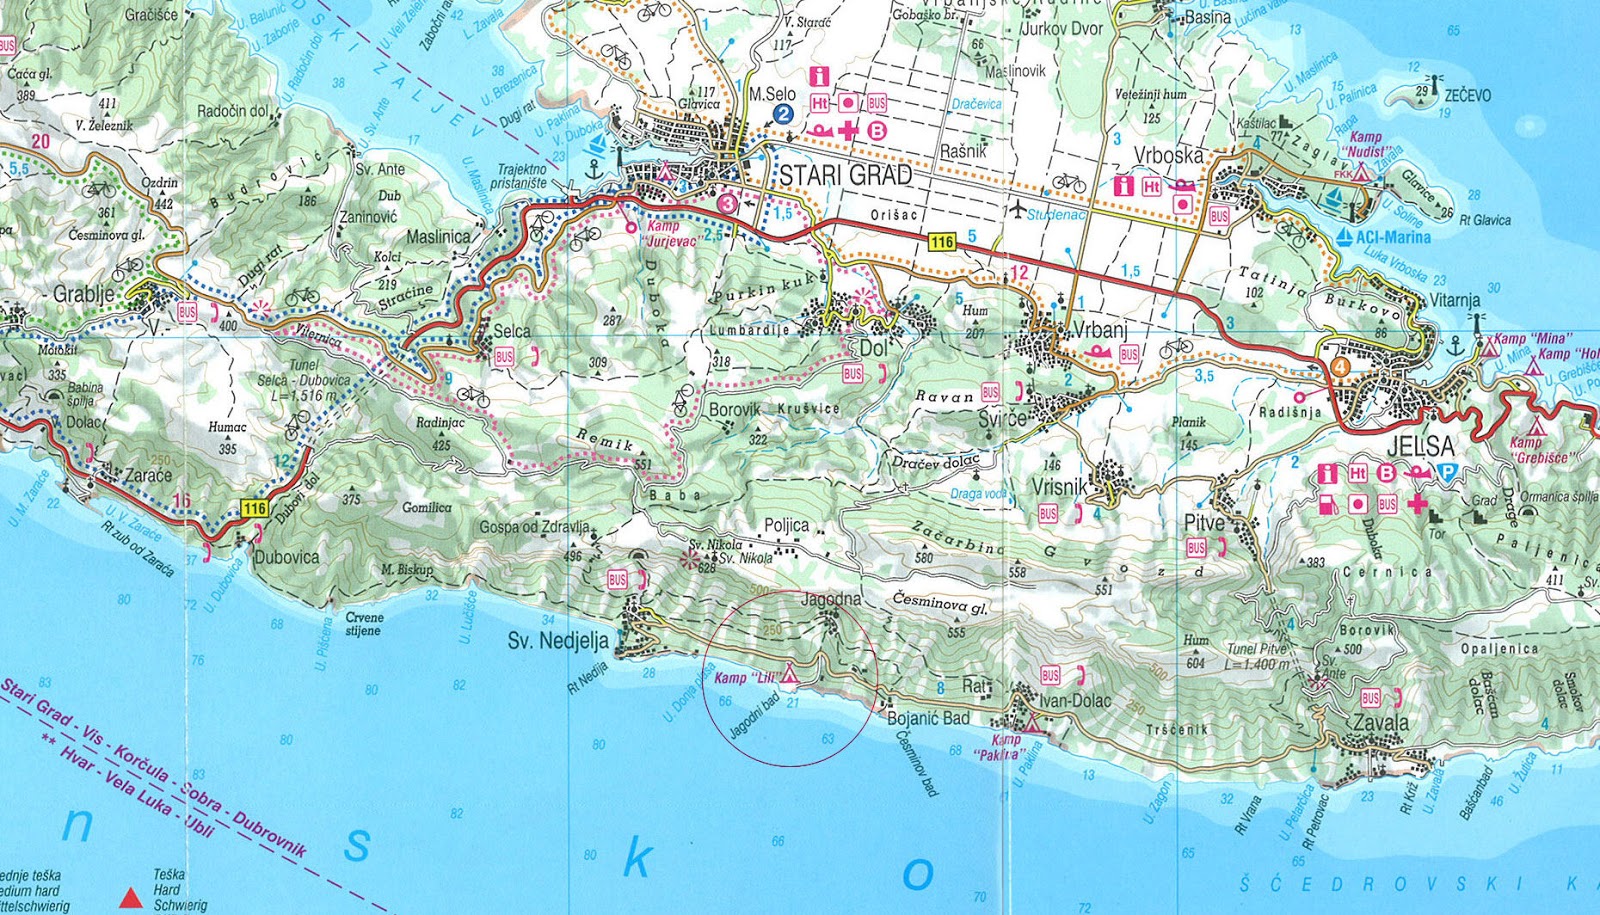 Camp Lili Chorwacja wyspa Hvar mapa.jpg